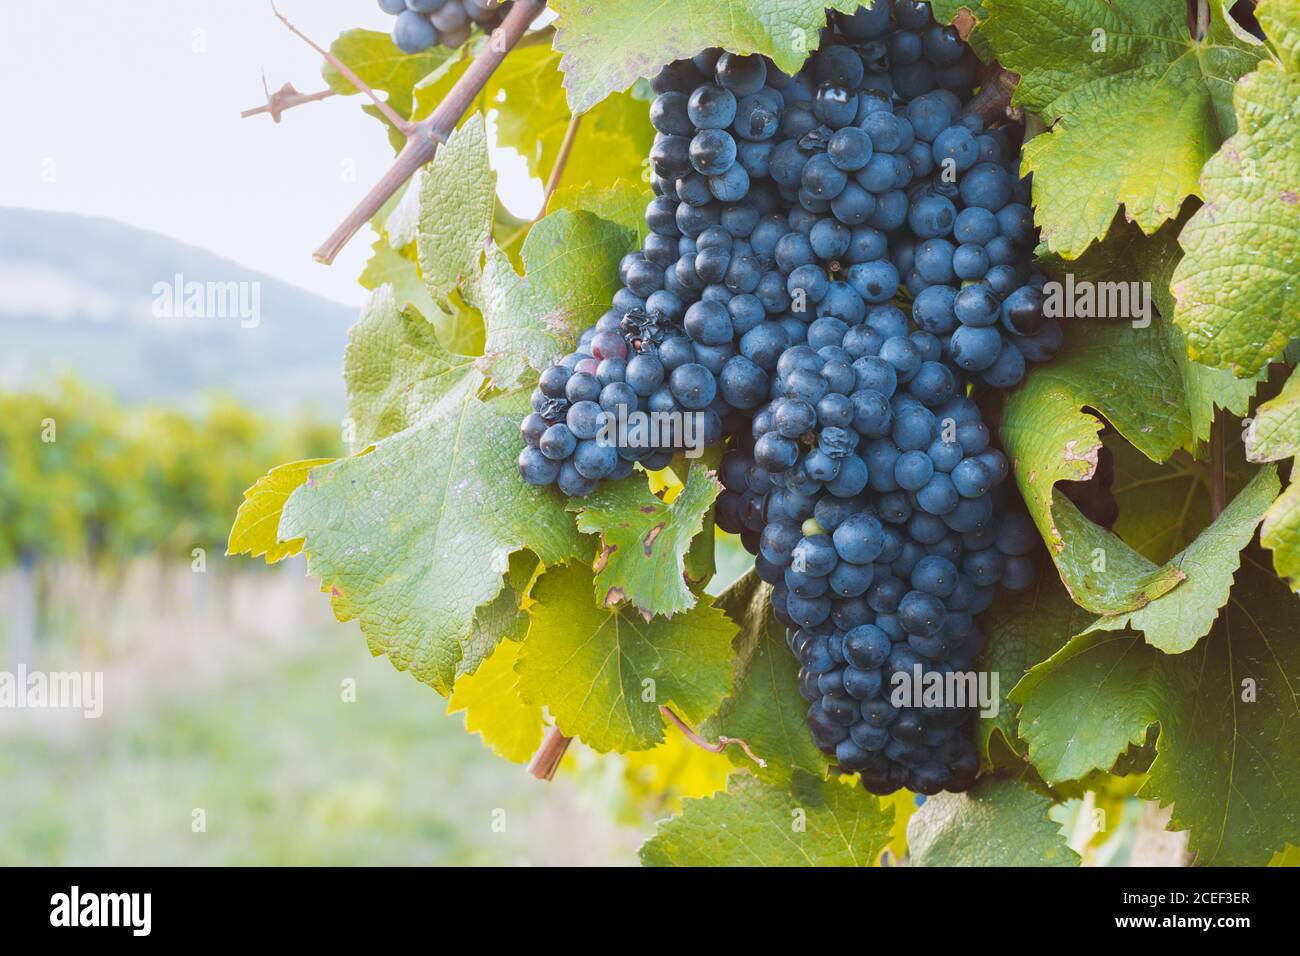 cierre de un manojo de uvas azules que crecen en el viñedo Foto de stock